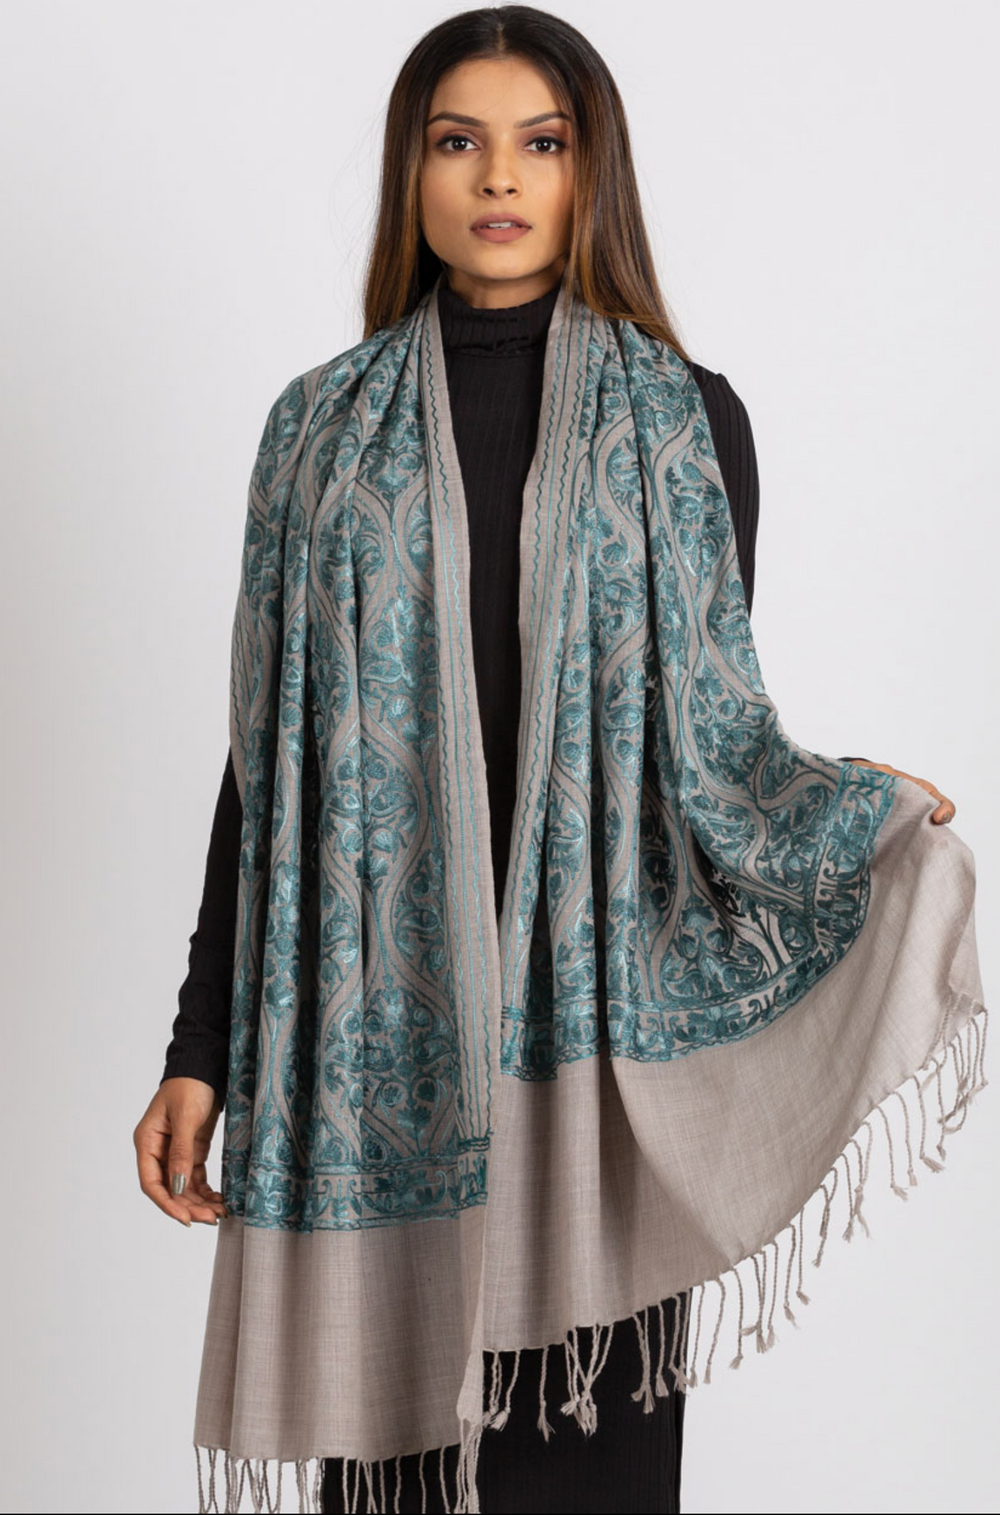 Sevya Surani shawl, embroidered